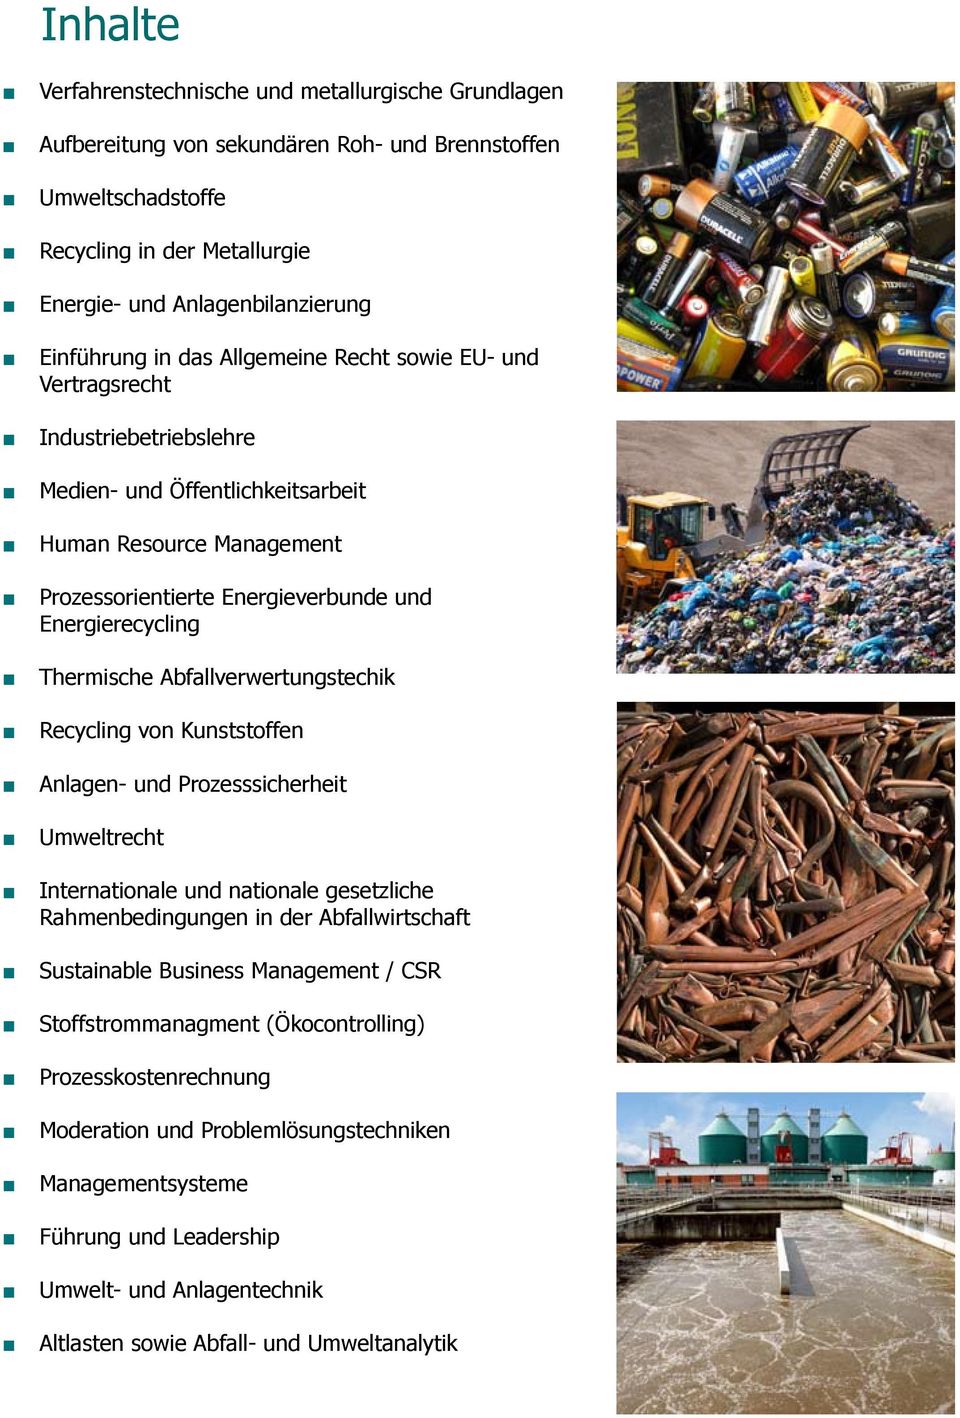 Thermische Abfallverwertungstechik Recycling von Kunststoffen Anlagen- und Prozesssicherheit Umweltrecht Internationale und nationale gesetzliche Rahmenbedingungen in der Abfallwirtschaft Sustainable